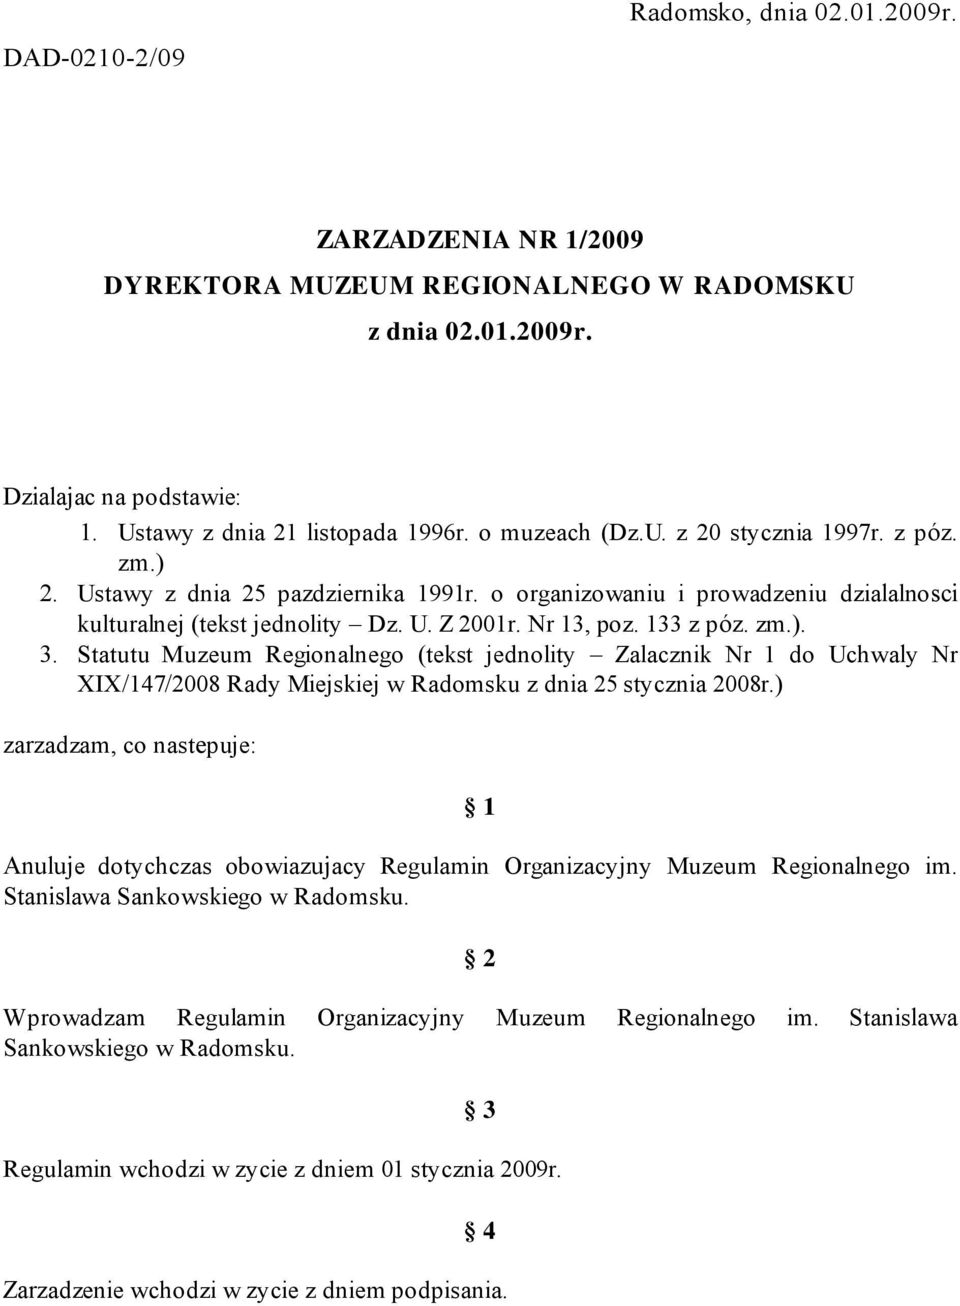 Statutu Muzeum Regionalnego (tekst jednolity Zalacznik Nr 1 do Uchwaly Nr XIX/147/2008 Rady Miejskiej w Radomsku z dnia 25 stycznia 2008r.